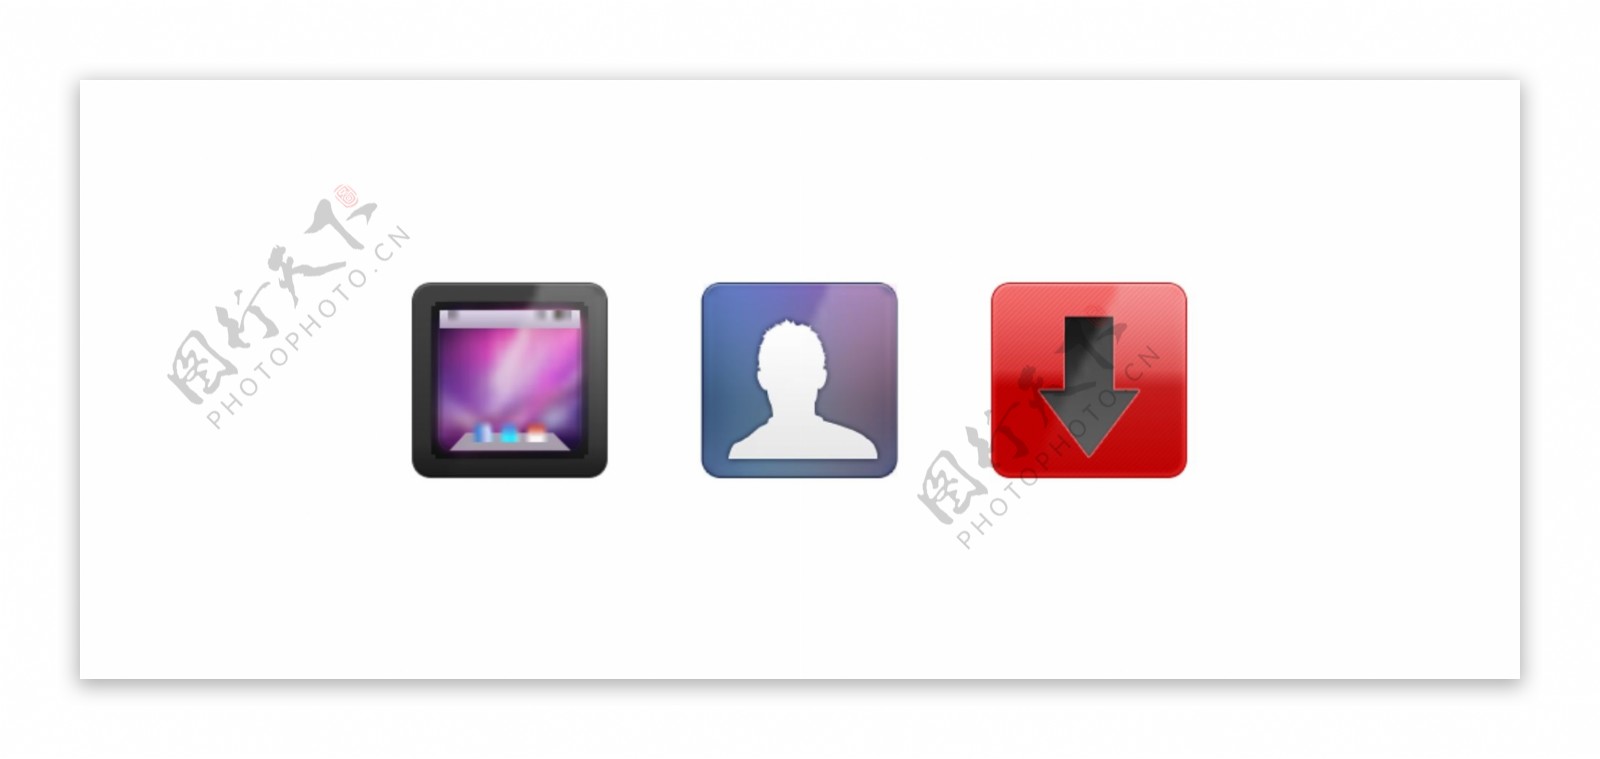 手机APP主题图标icon设计素材